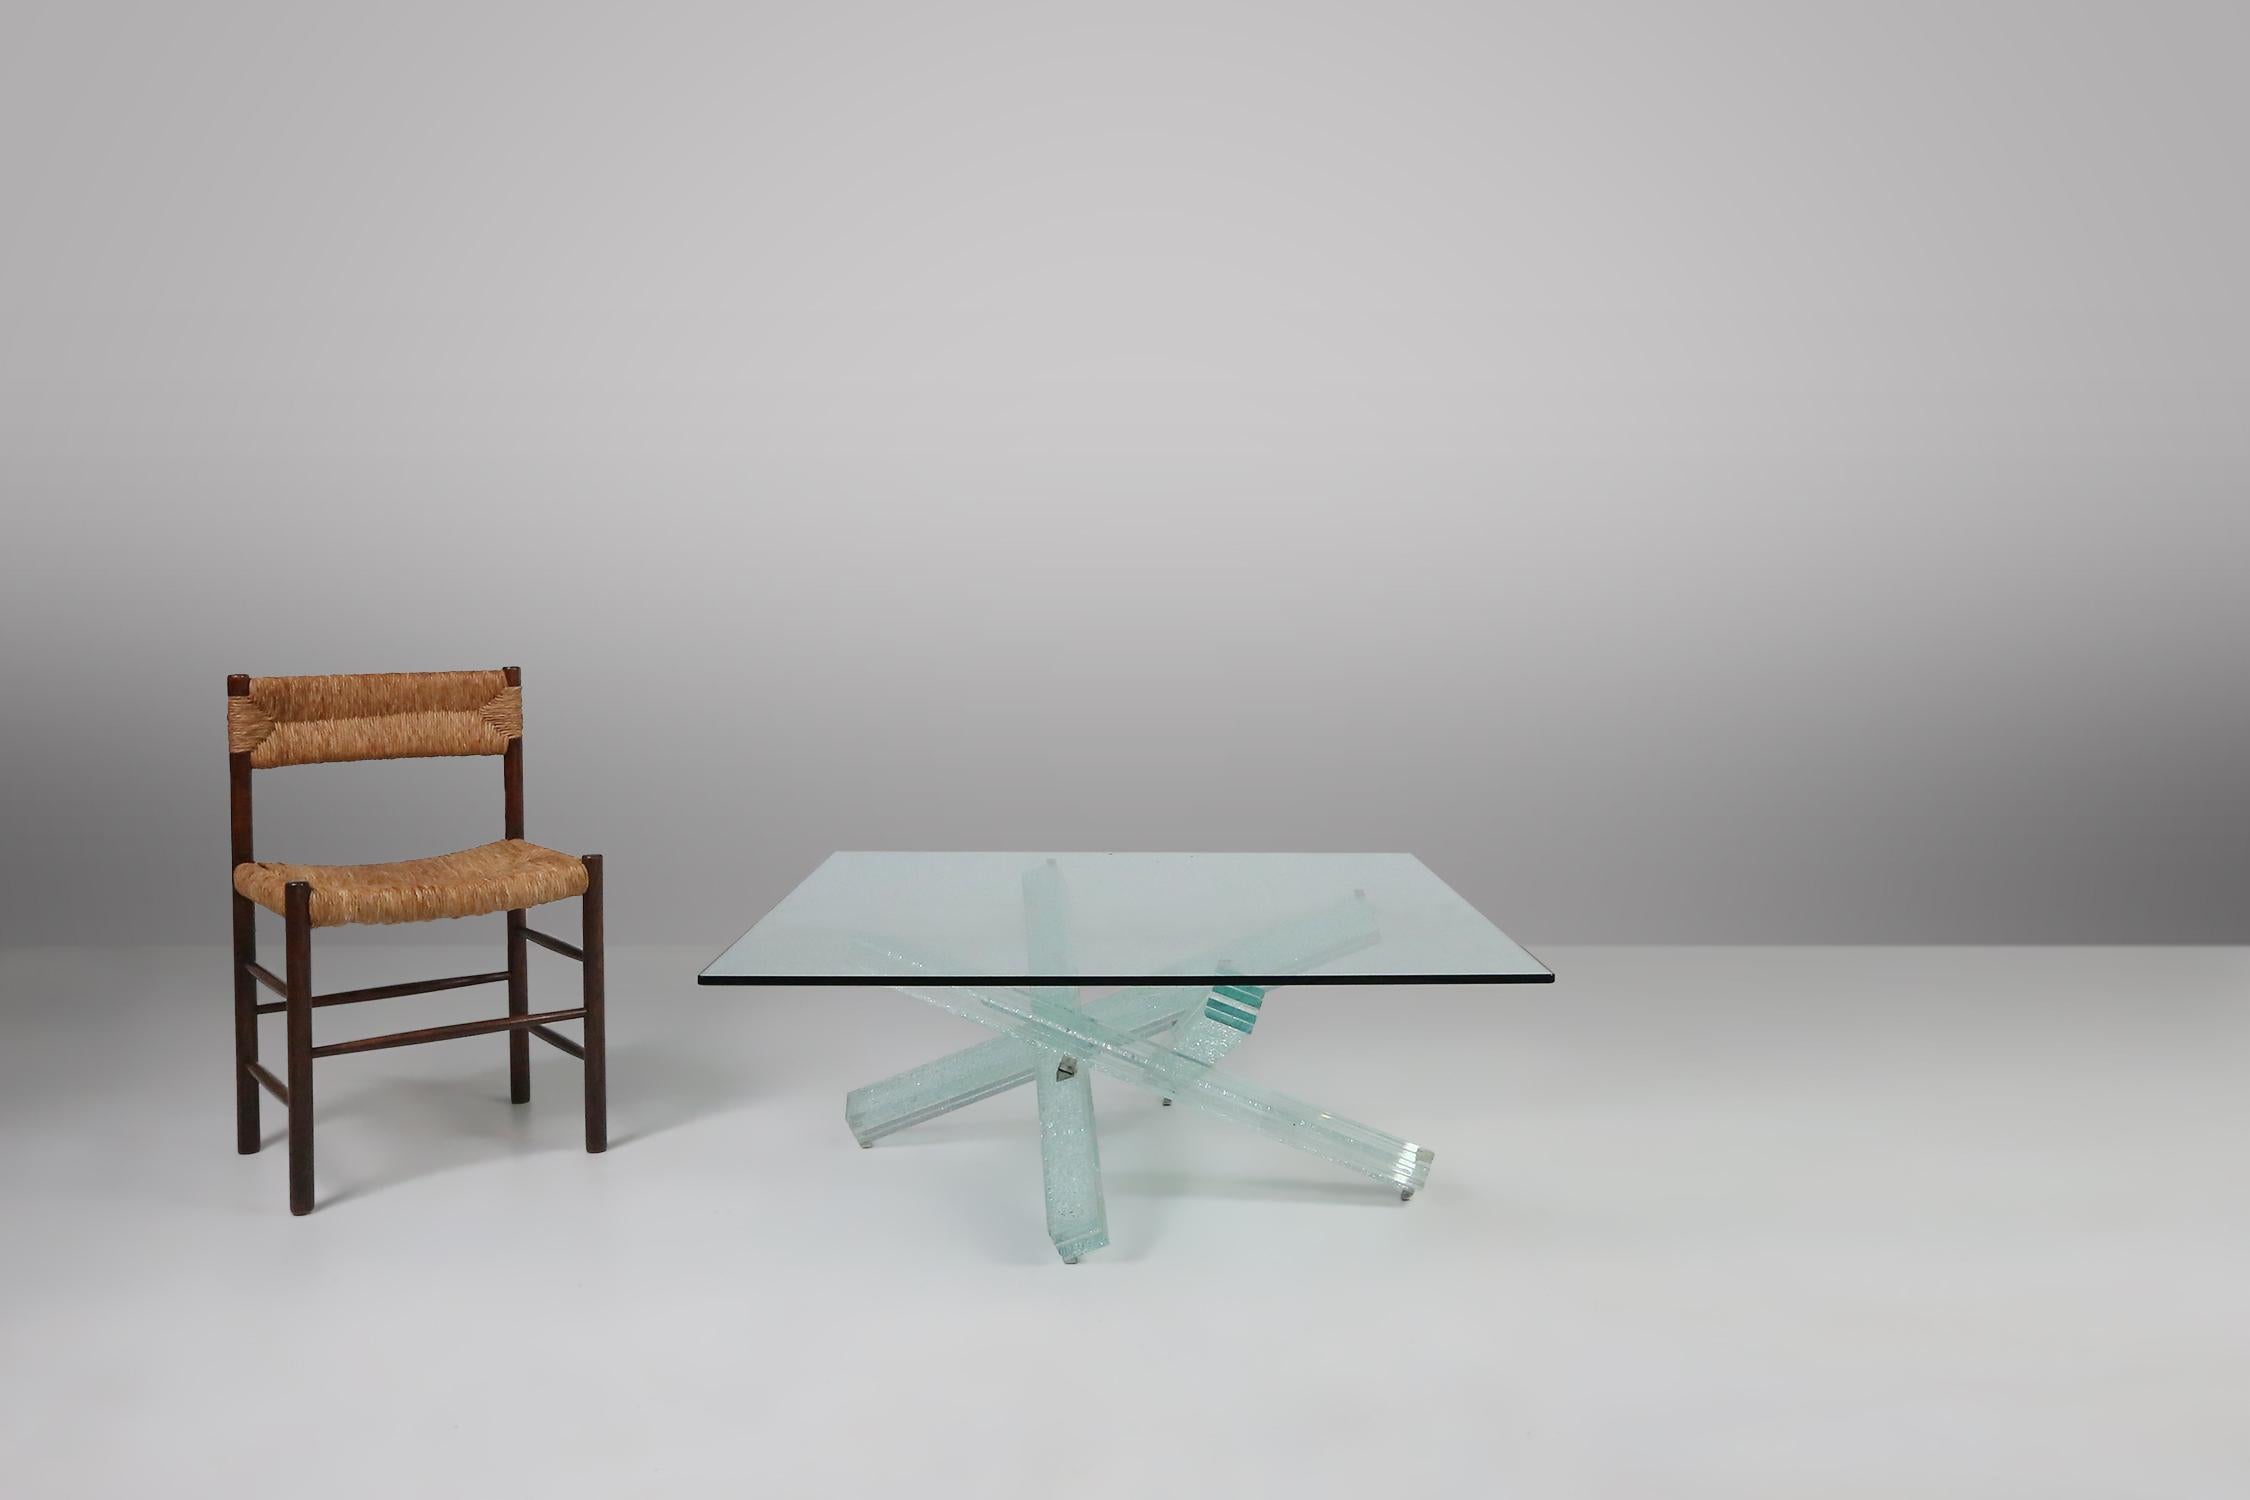 Cette table basse est un chef-d'œuvre de design et d'artisanat, créé par le célèbre designer français Maurice Barilone pour la marque Roche Bobois.

Le plateau de la table est en verre transparent de 12 mm, de forme carrée et aux angles arrondis. La